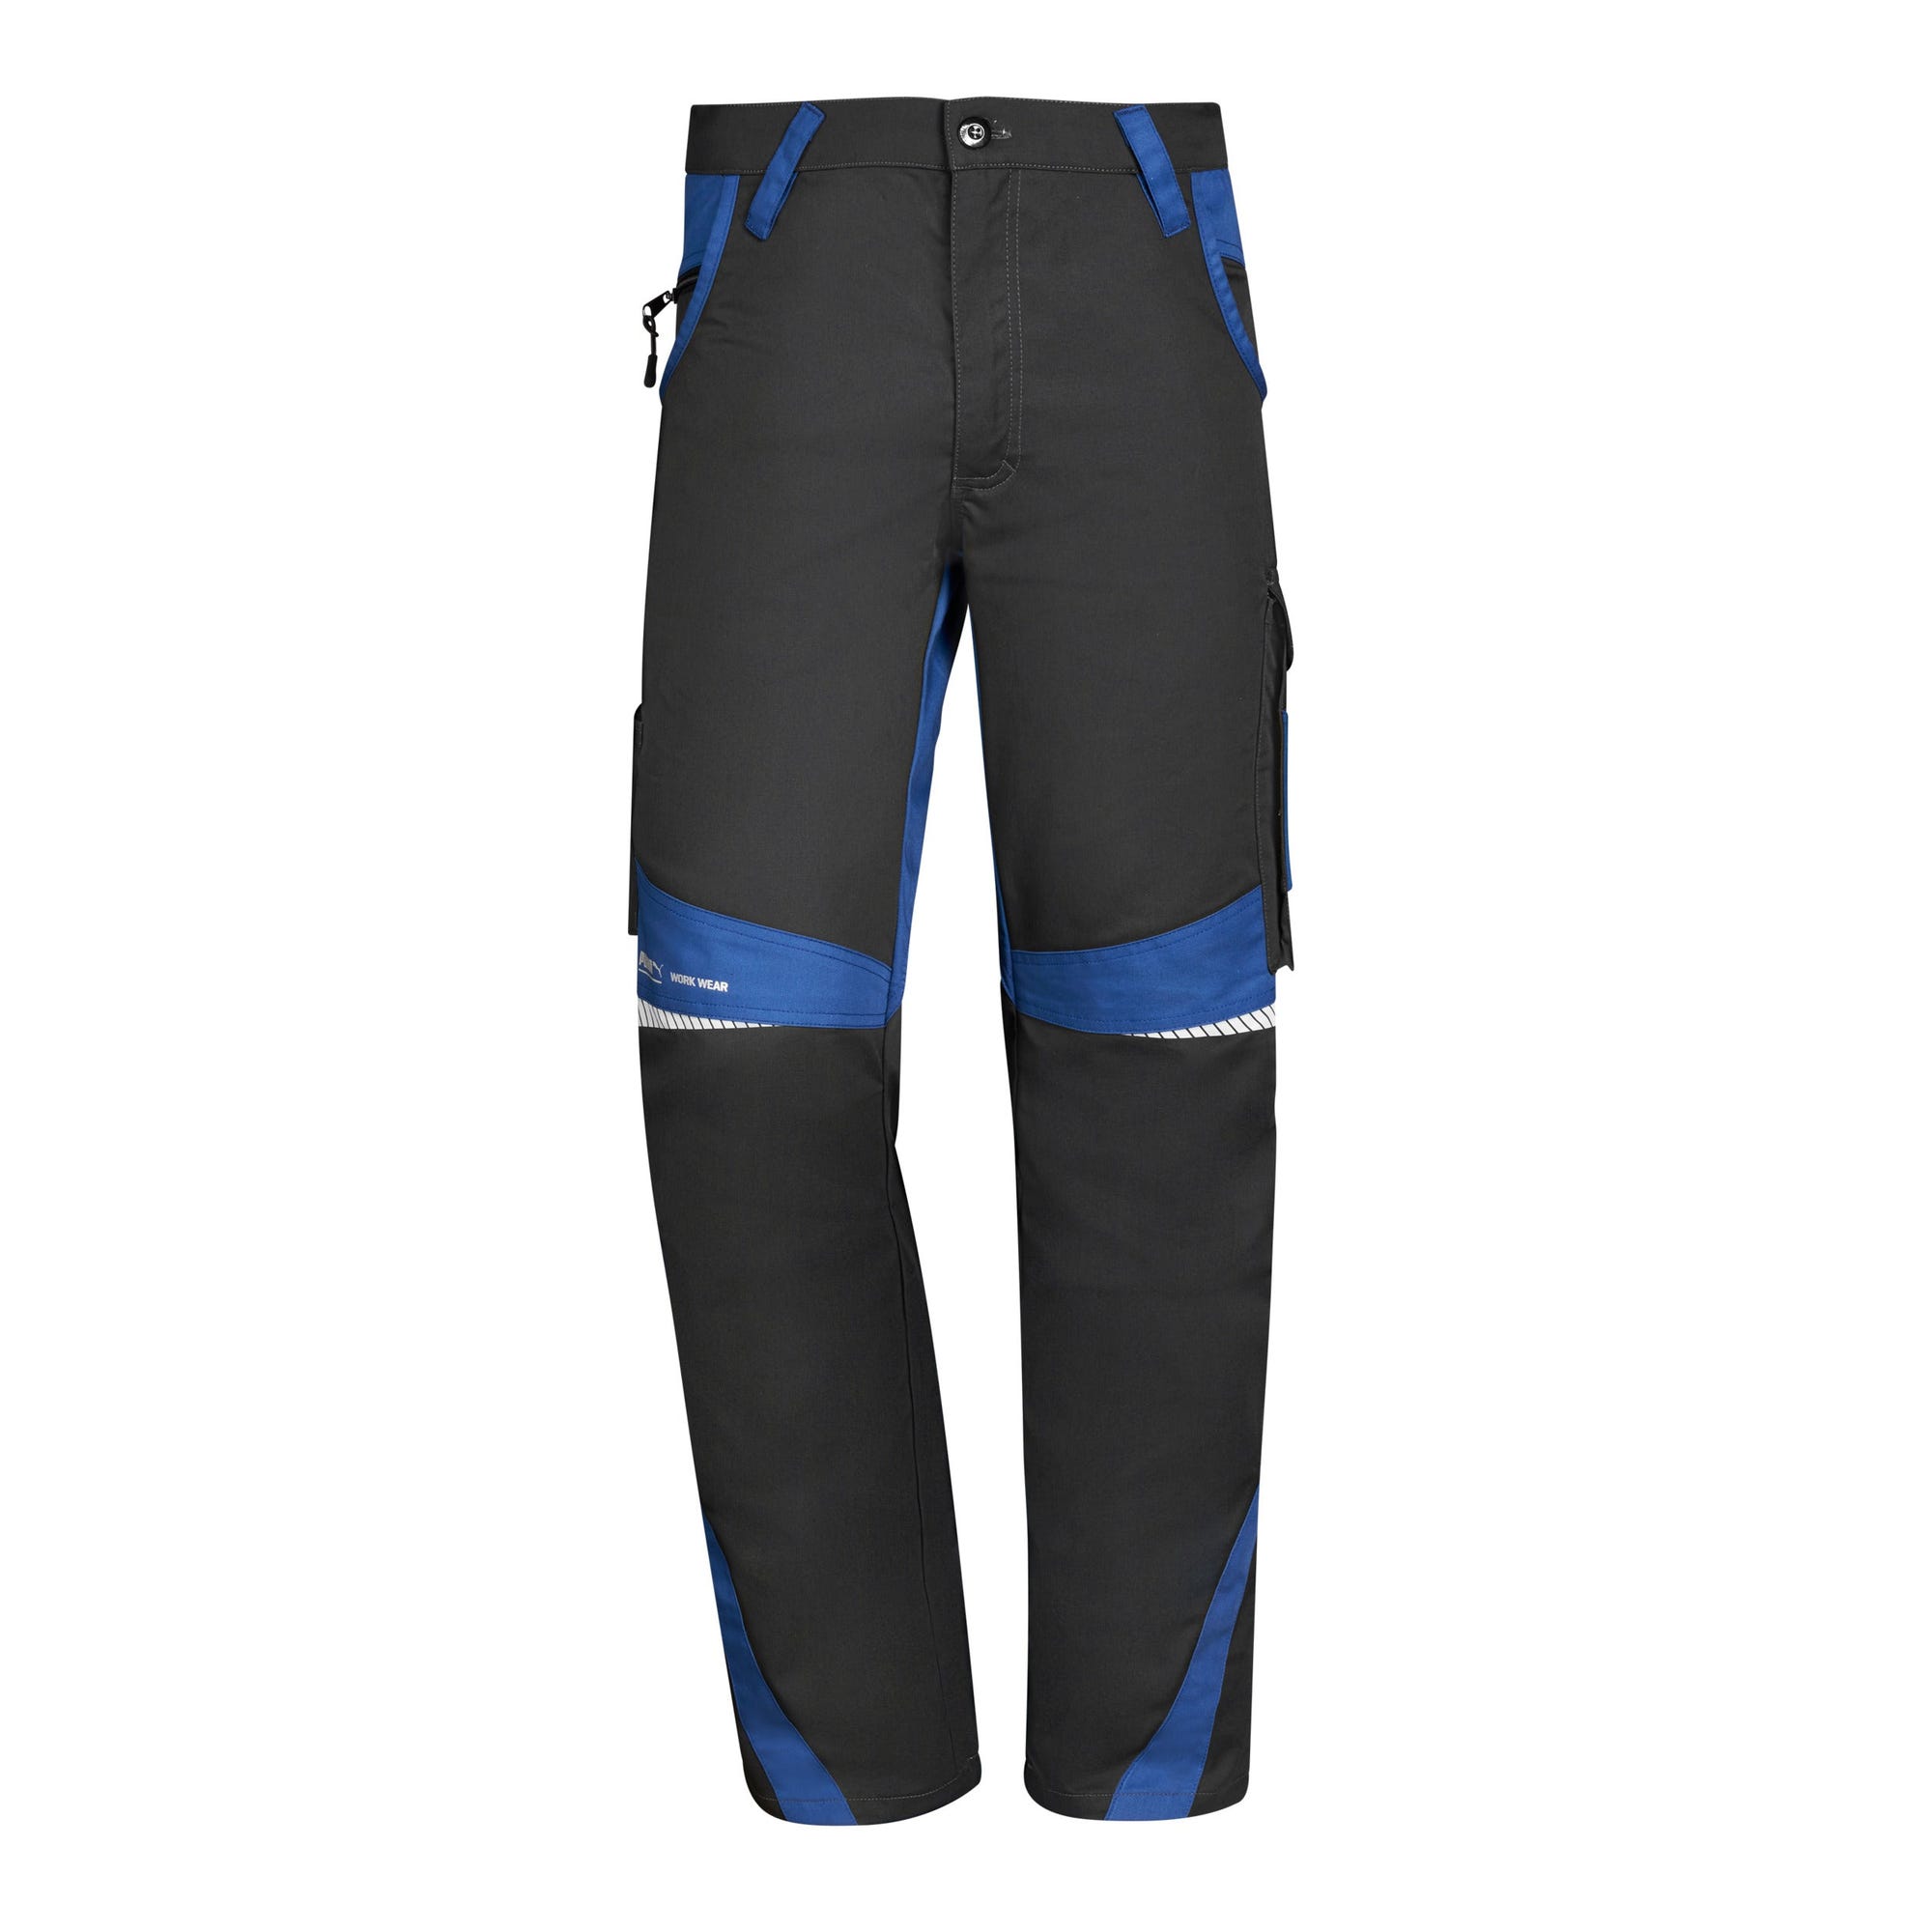 Puma - Pantalon de travail avec zones réfléchissantes - Gris / Bleu - 38 5